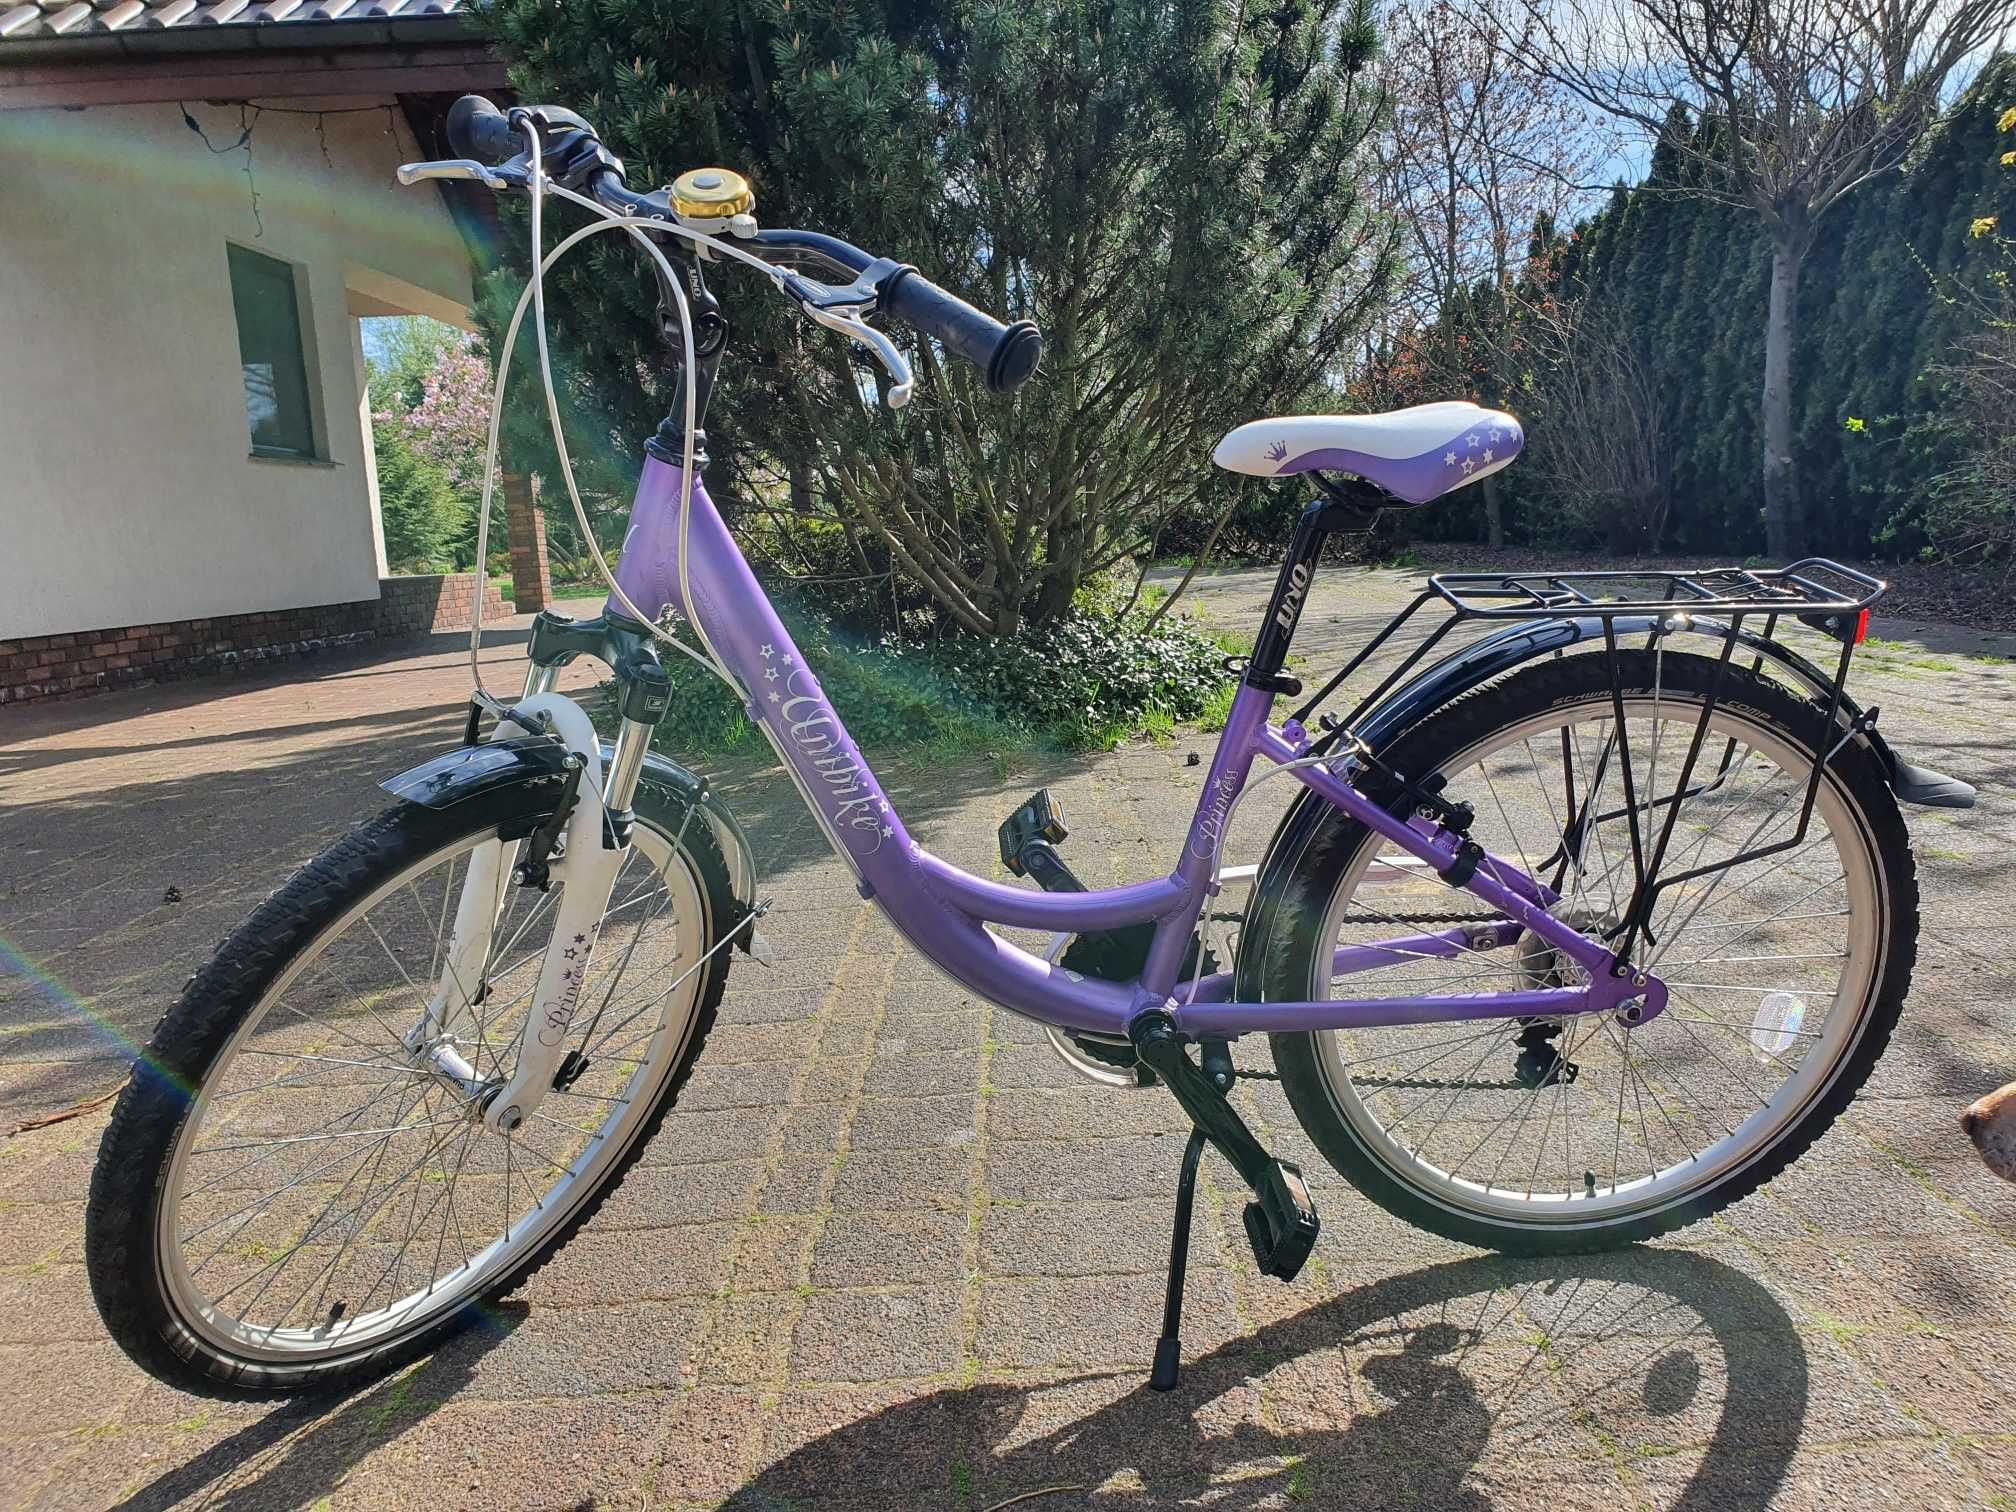 Rower DZIEWCZĘCY  Unibike Princess  foletowy